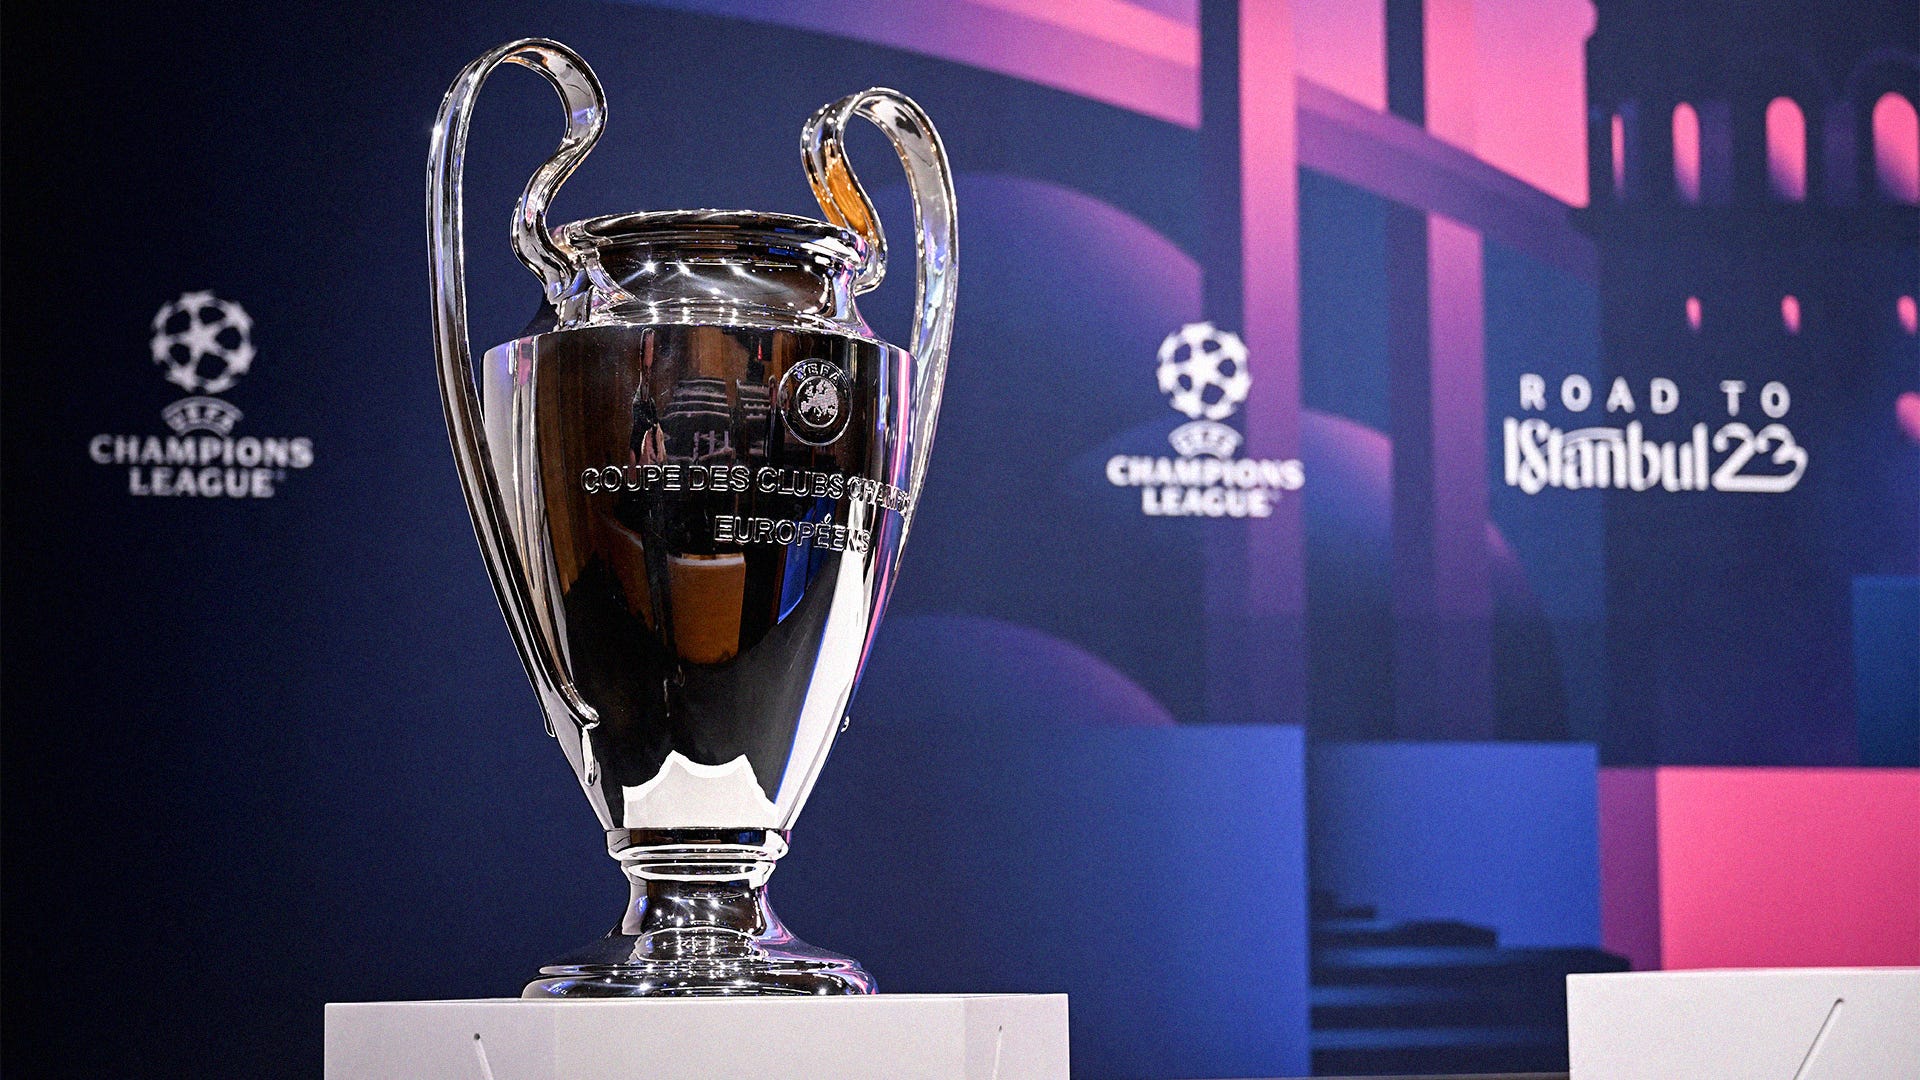 UEFA Champions League: jogos das oitavas de final